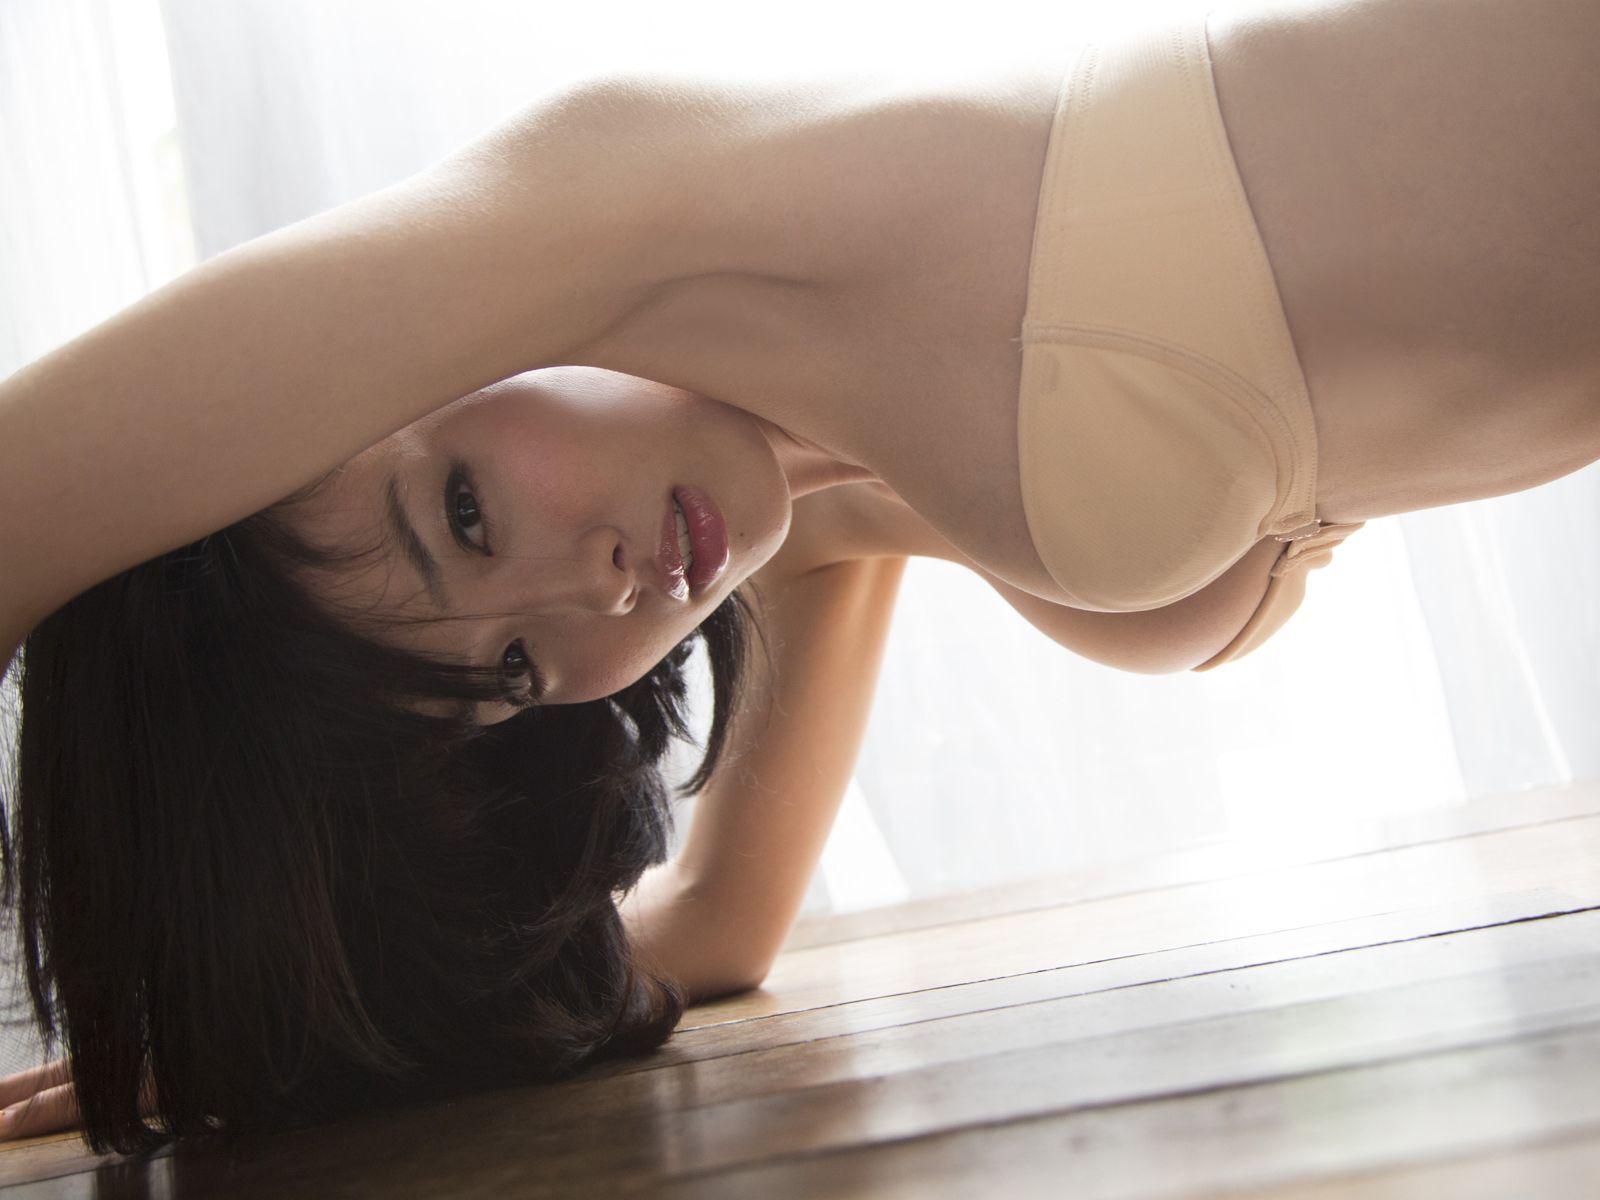 Keno Xingnan Japanese actress photo [Sabra] 2012.10.25 cover girl